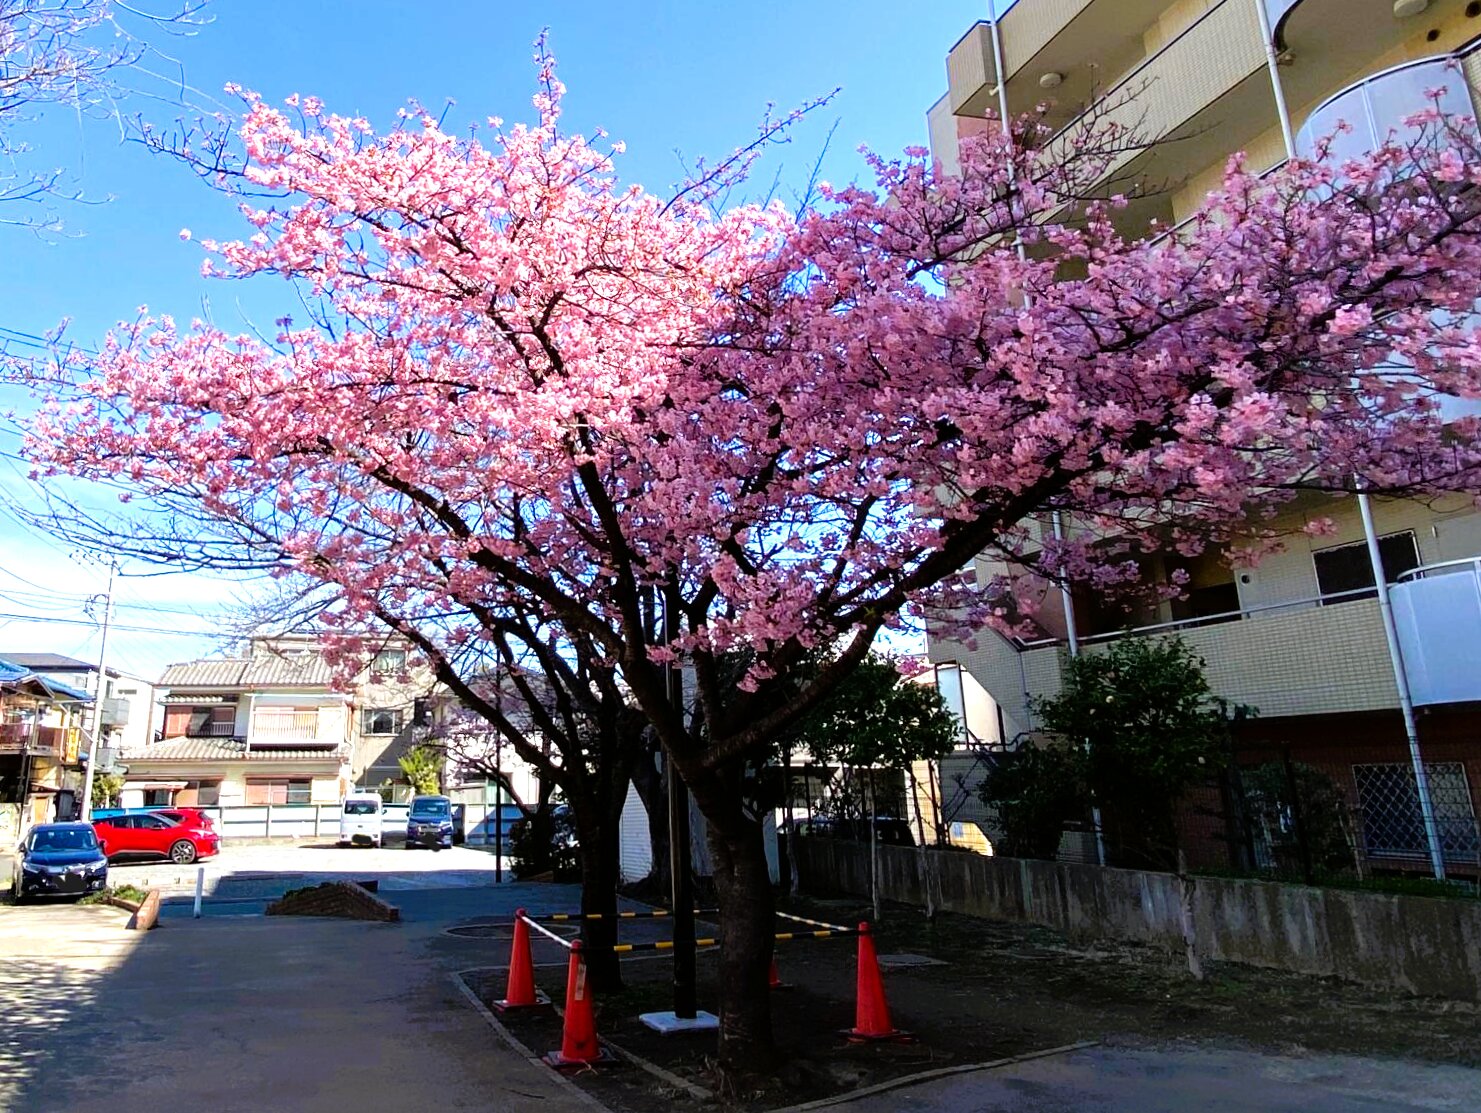 青い空に映える桜はとてもきれいです